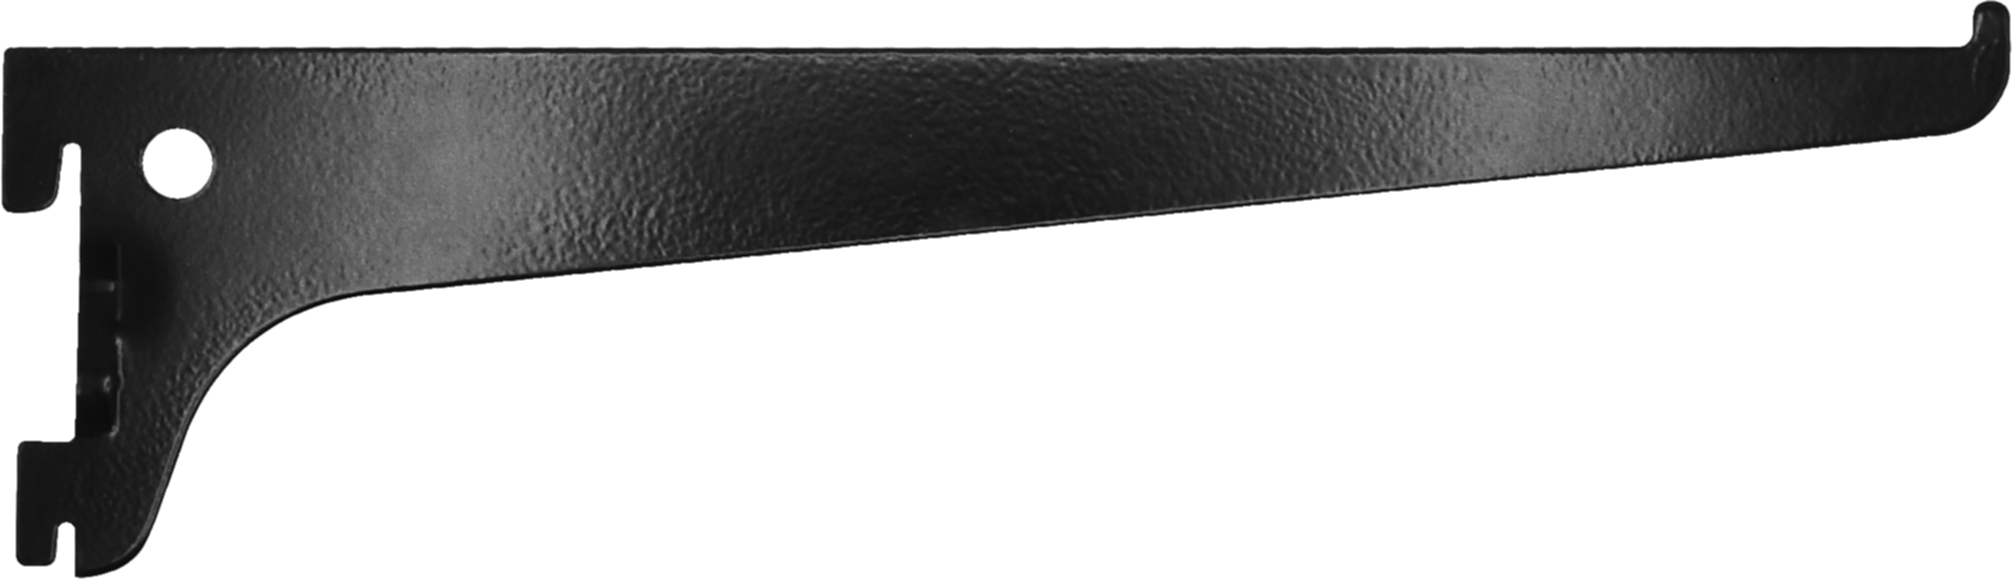 Console simple acier noir 25 cm entraxe 50 mm - CIME